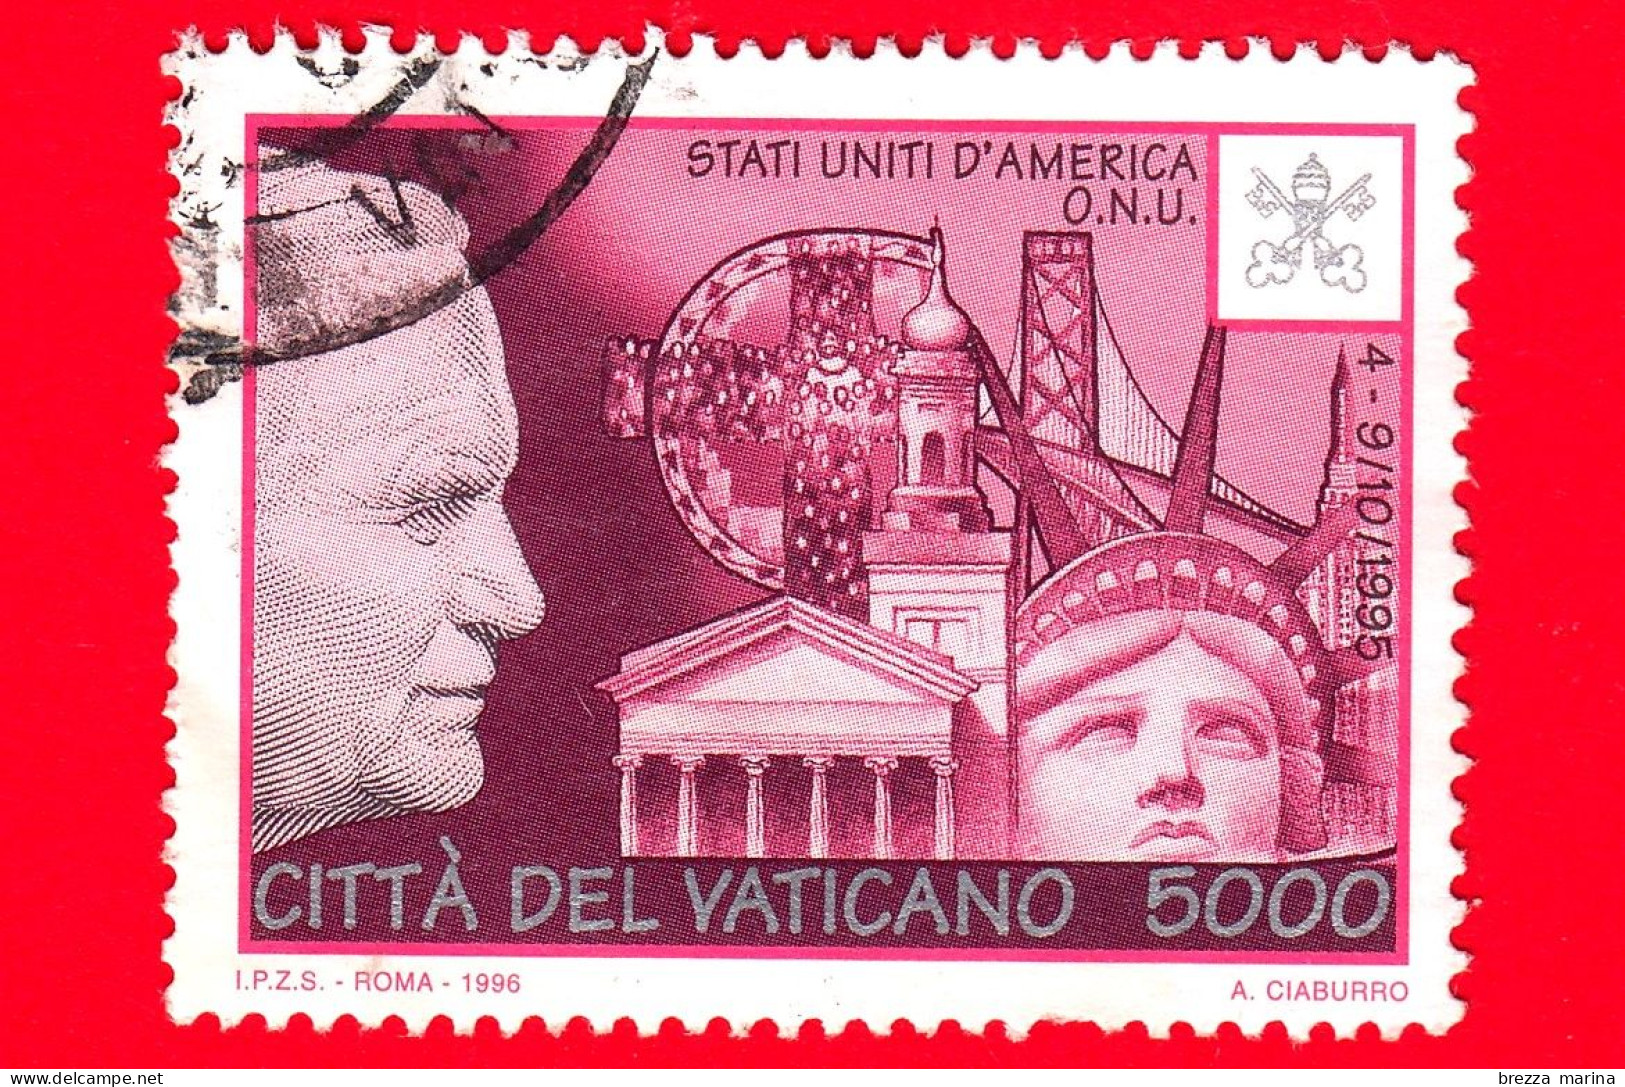 VATICANO - Usato - 1996 - Viaggi Di Giovanni Paolo II Nel 1995 - U.S.A. - 5000 L. - Usati